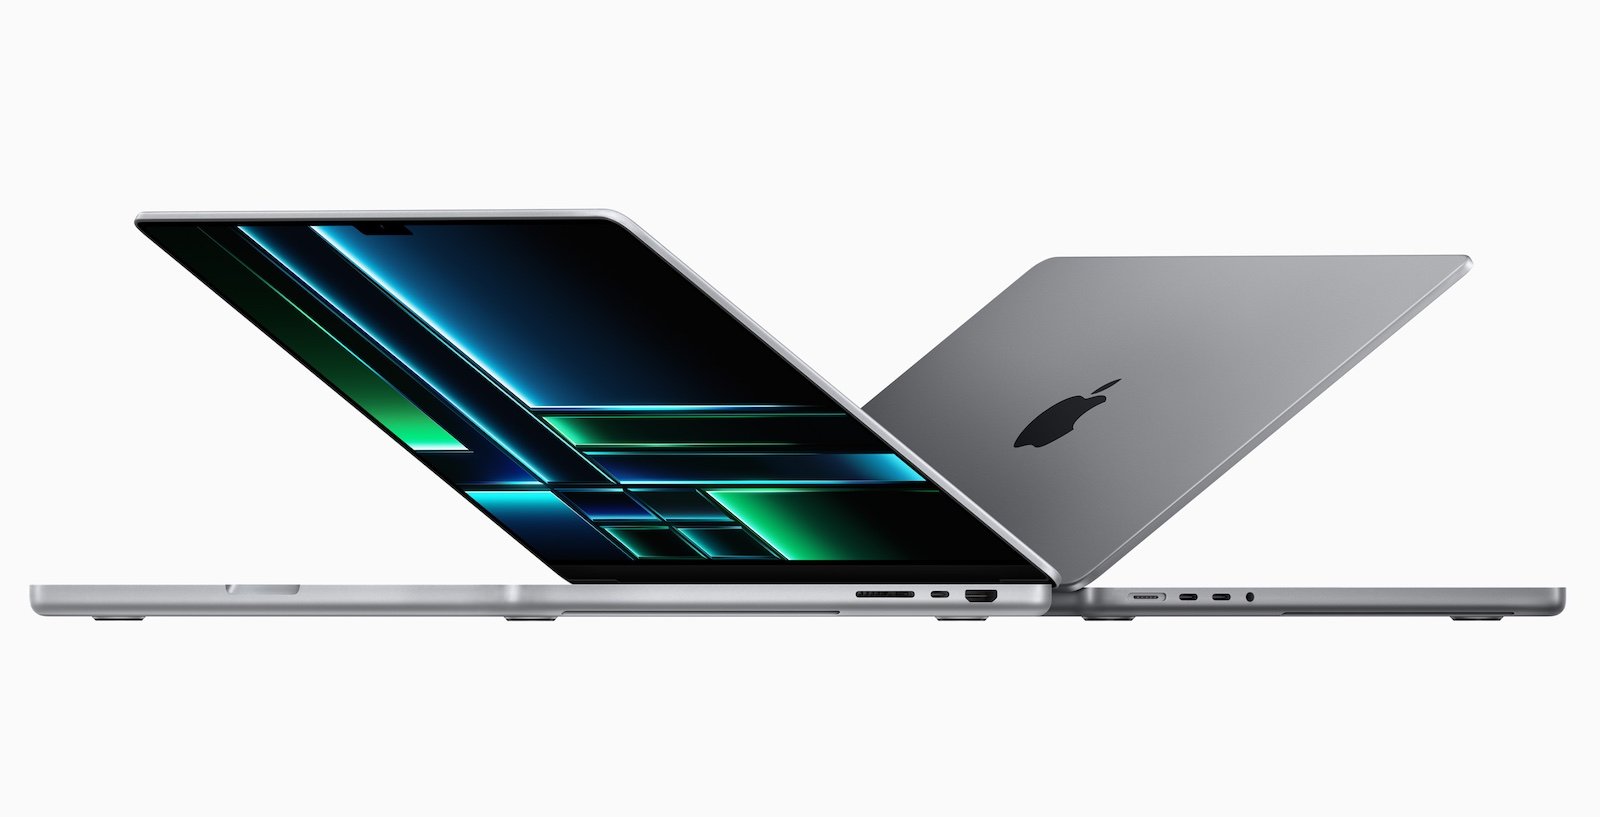 Η έκδοση 512GB του νέου MacBook Pro έχει πιο αργό SSD από το Mac που αντικαθιστά